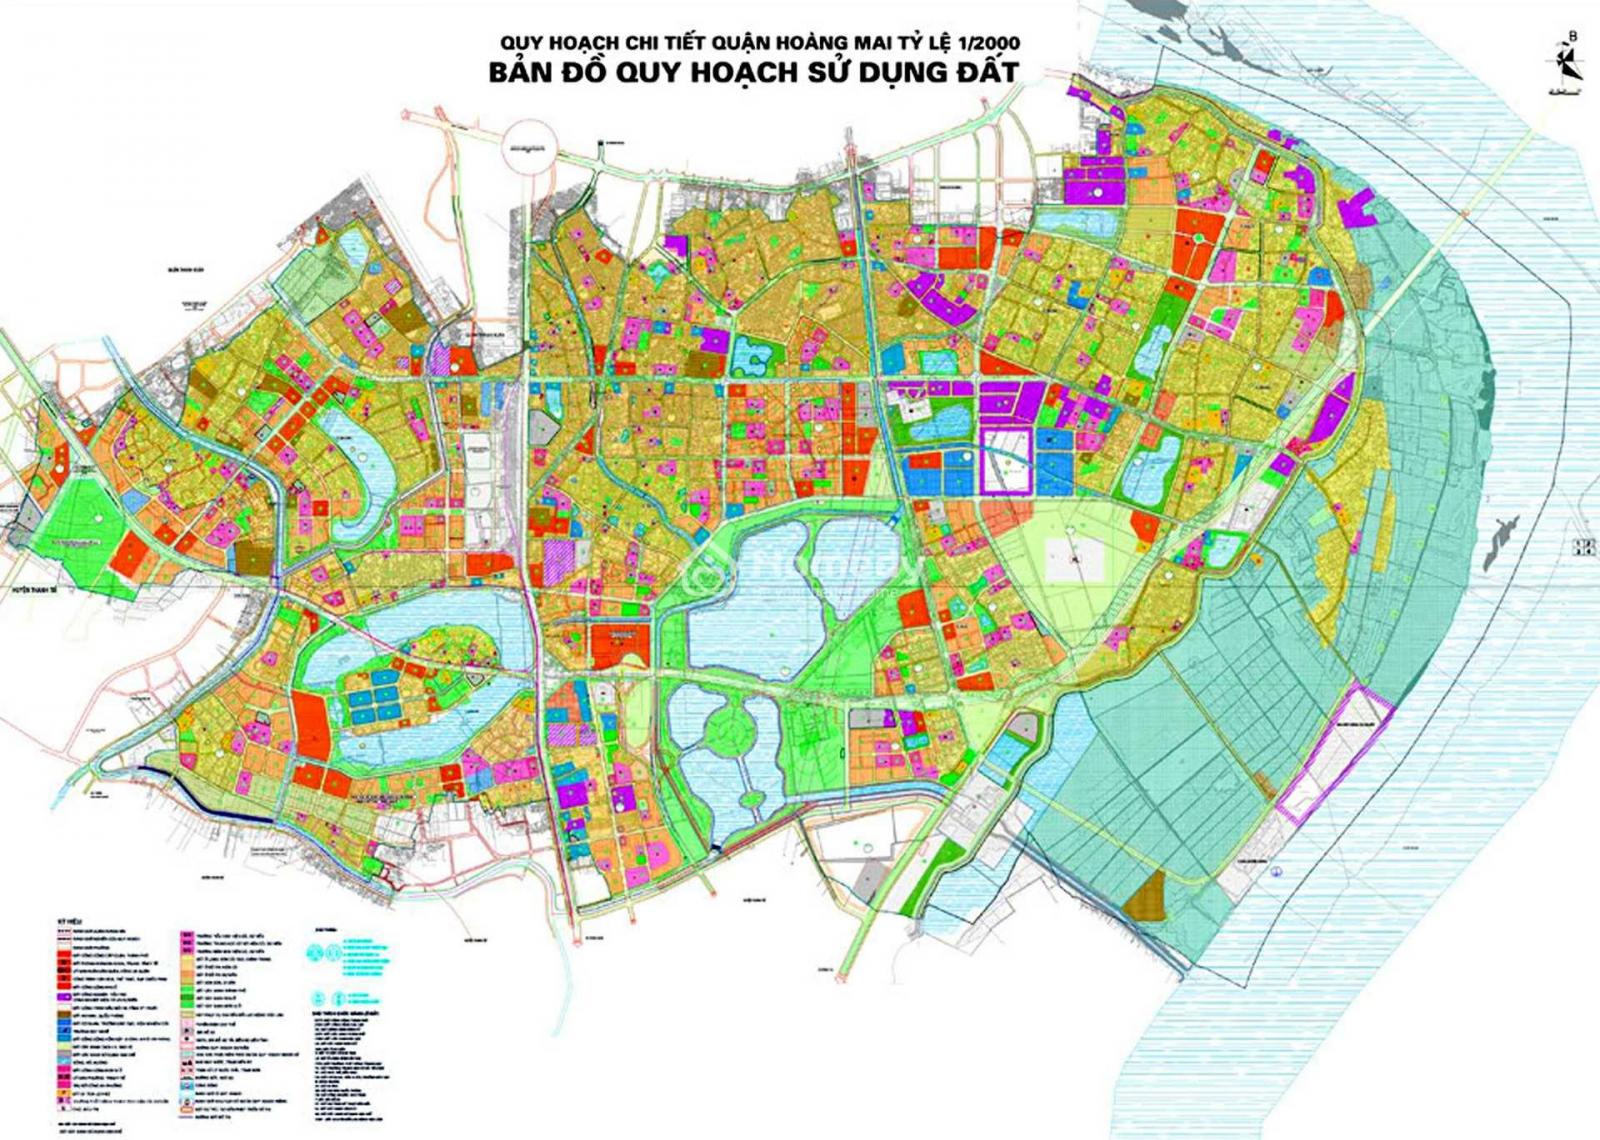 Bản đồ quy hoạch đất thể hiện sự phân bổ không gian cho các hoạt động kinh tế - xã hội, quốc phòng - an ninh.